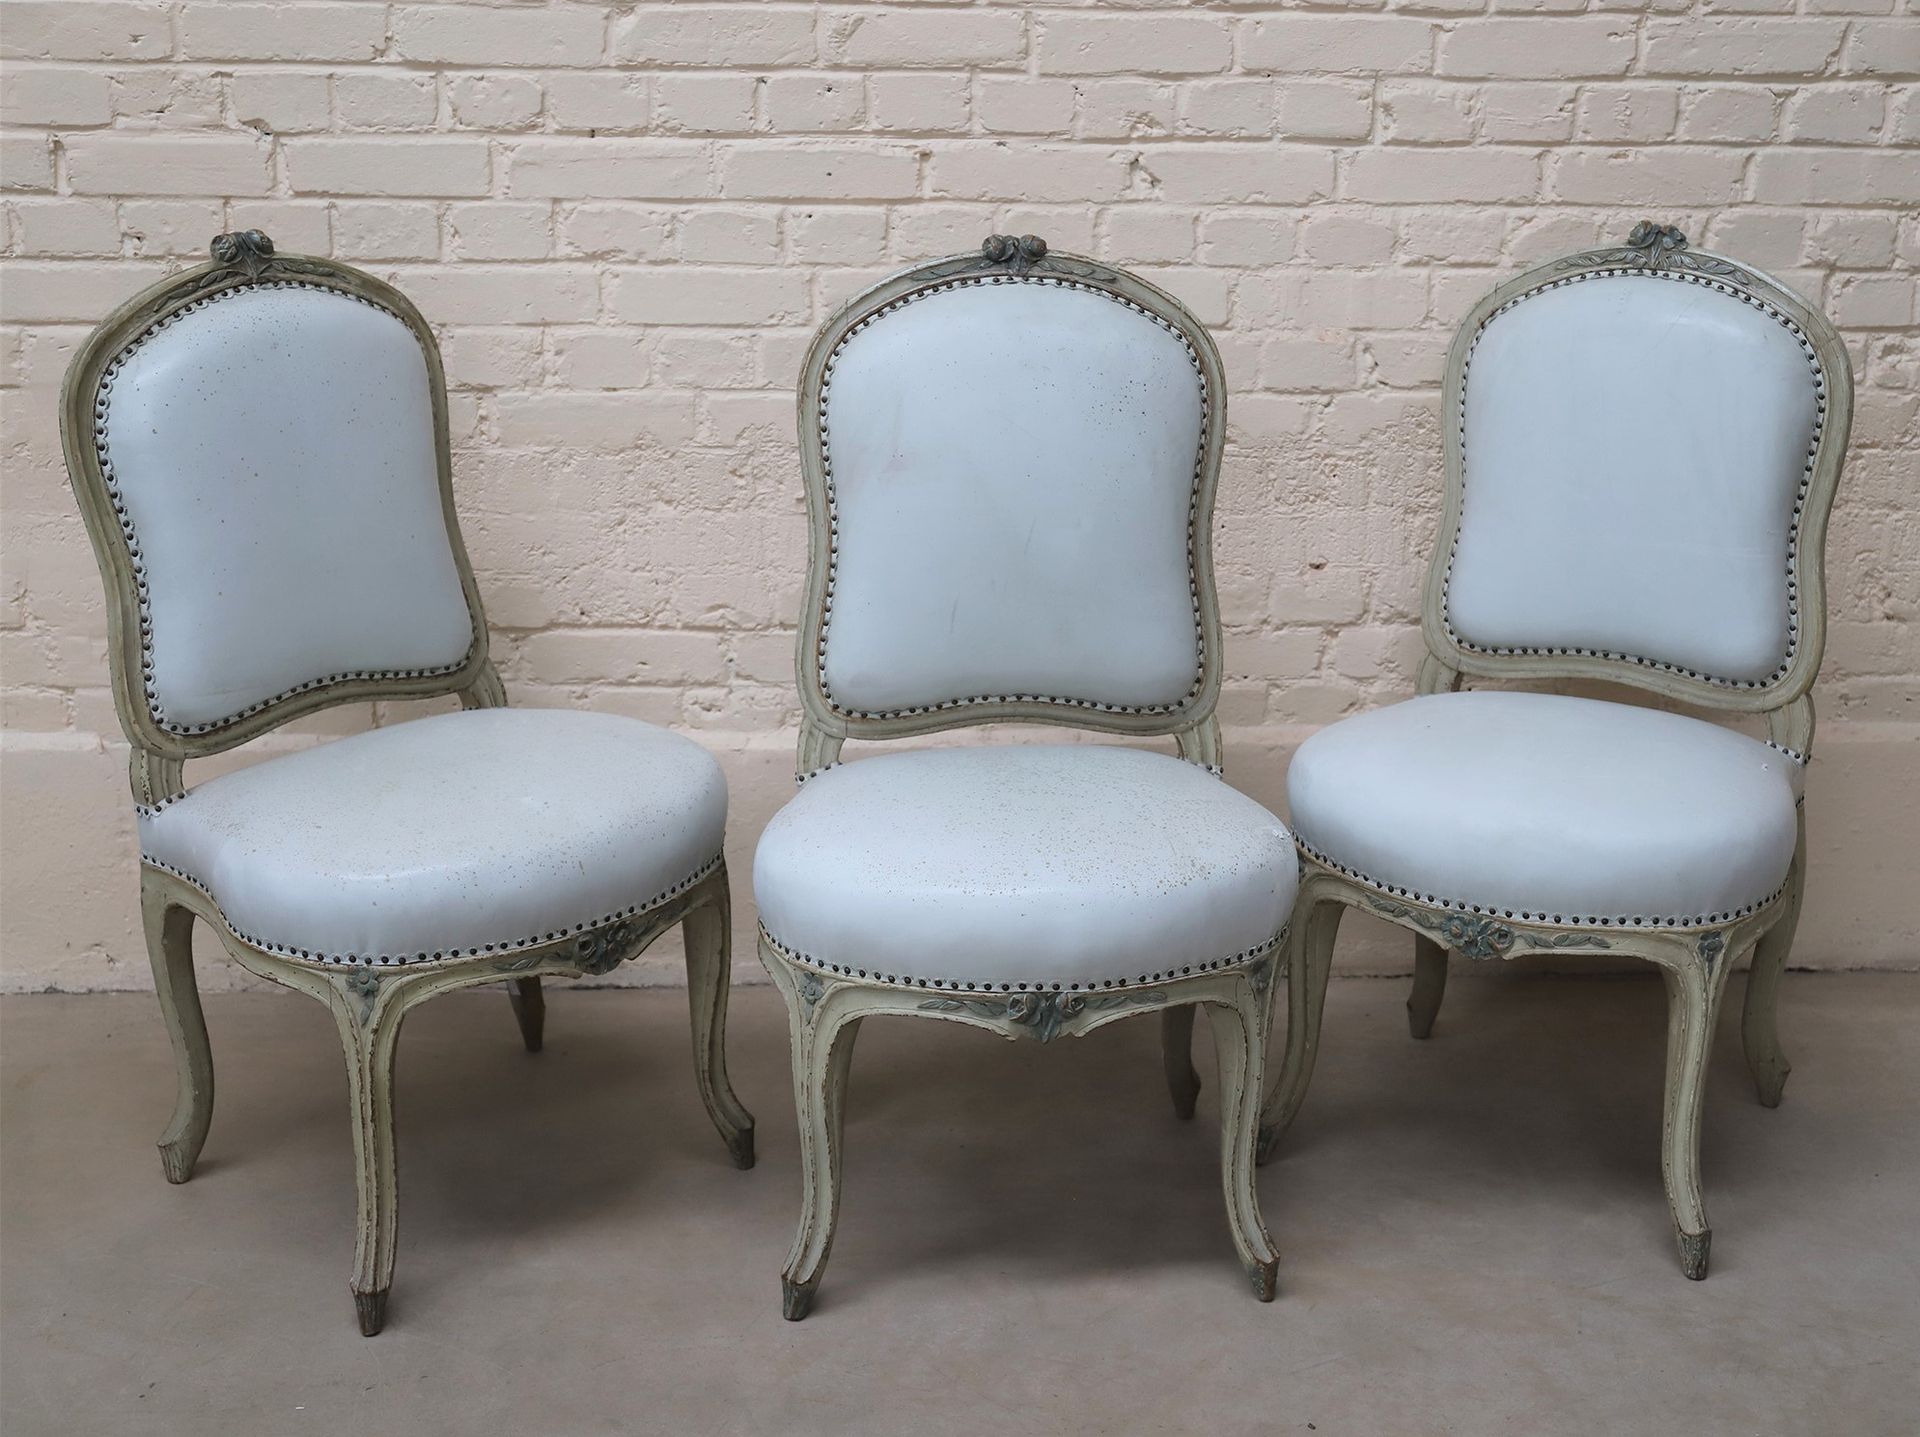 Null 弗朗索瓦-热尼（1731-1804）的3把椅子，1773年获得大师称号。

绿色和浅绿色的重装木材

皇后的靠背上面有在腰带上发现的雕刻的花朵

弯曲&hellip;